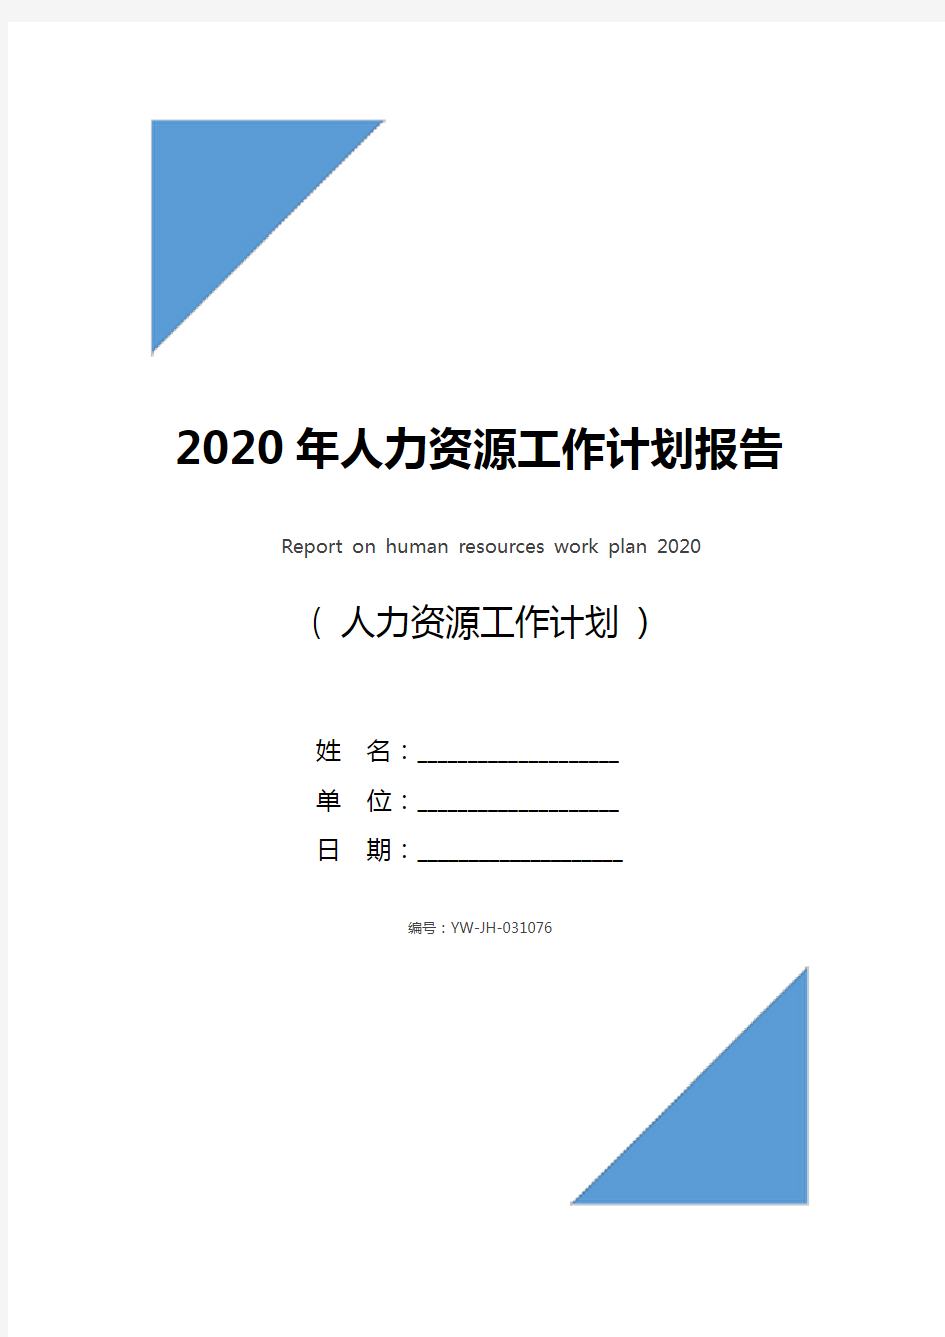 2020年人力资源工作计划报告